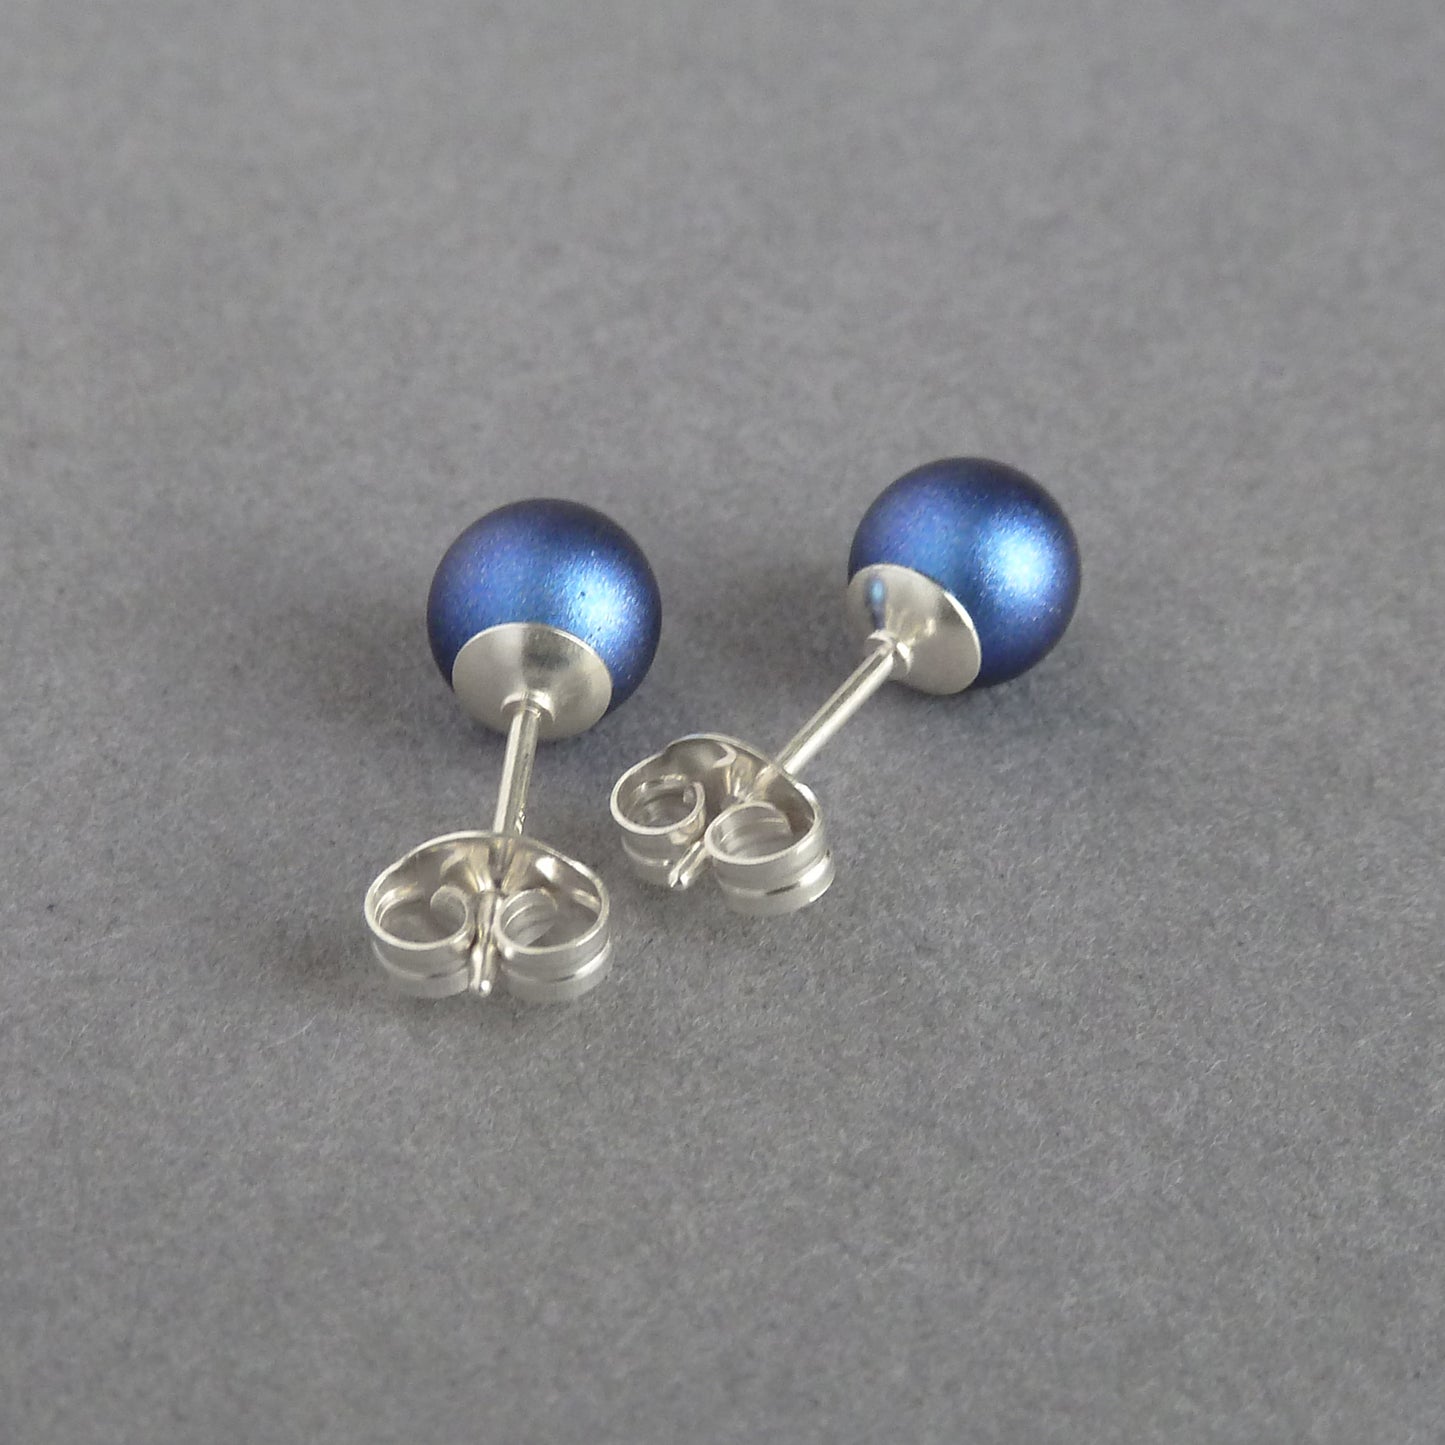 Small dark blue pearl studs